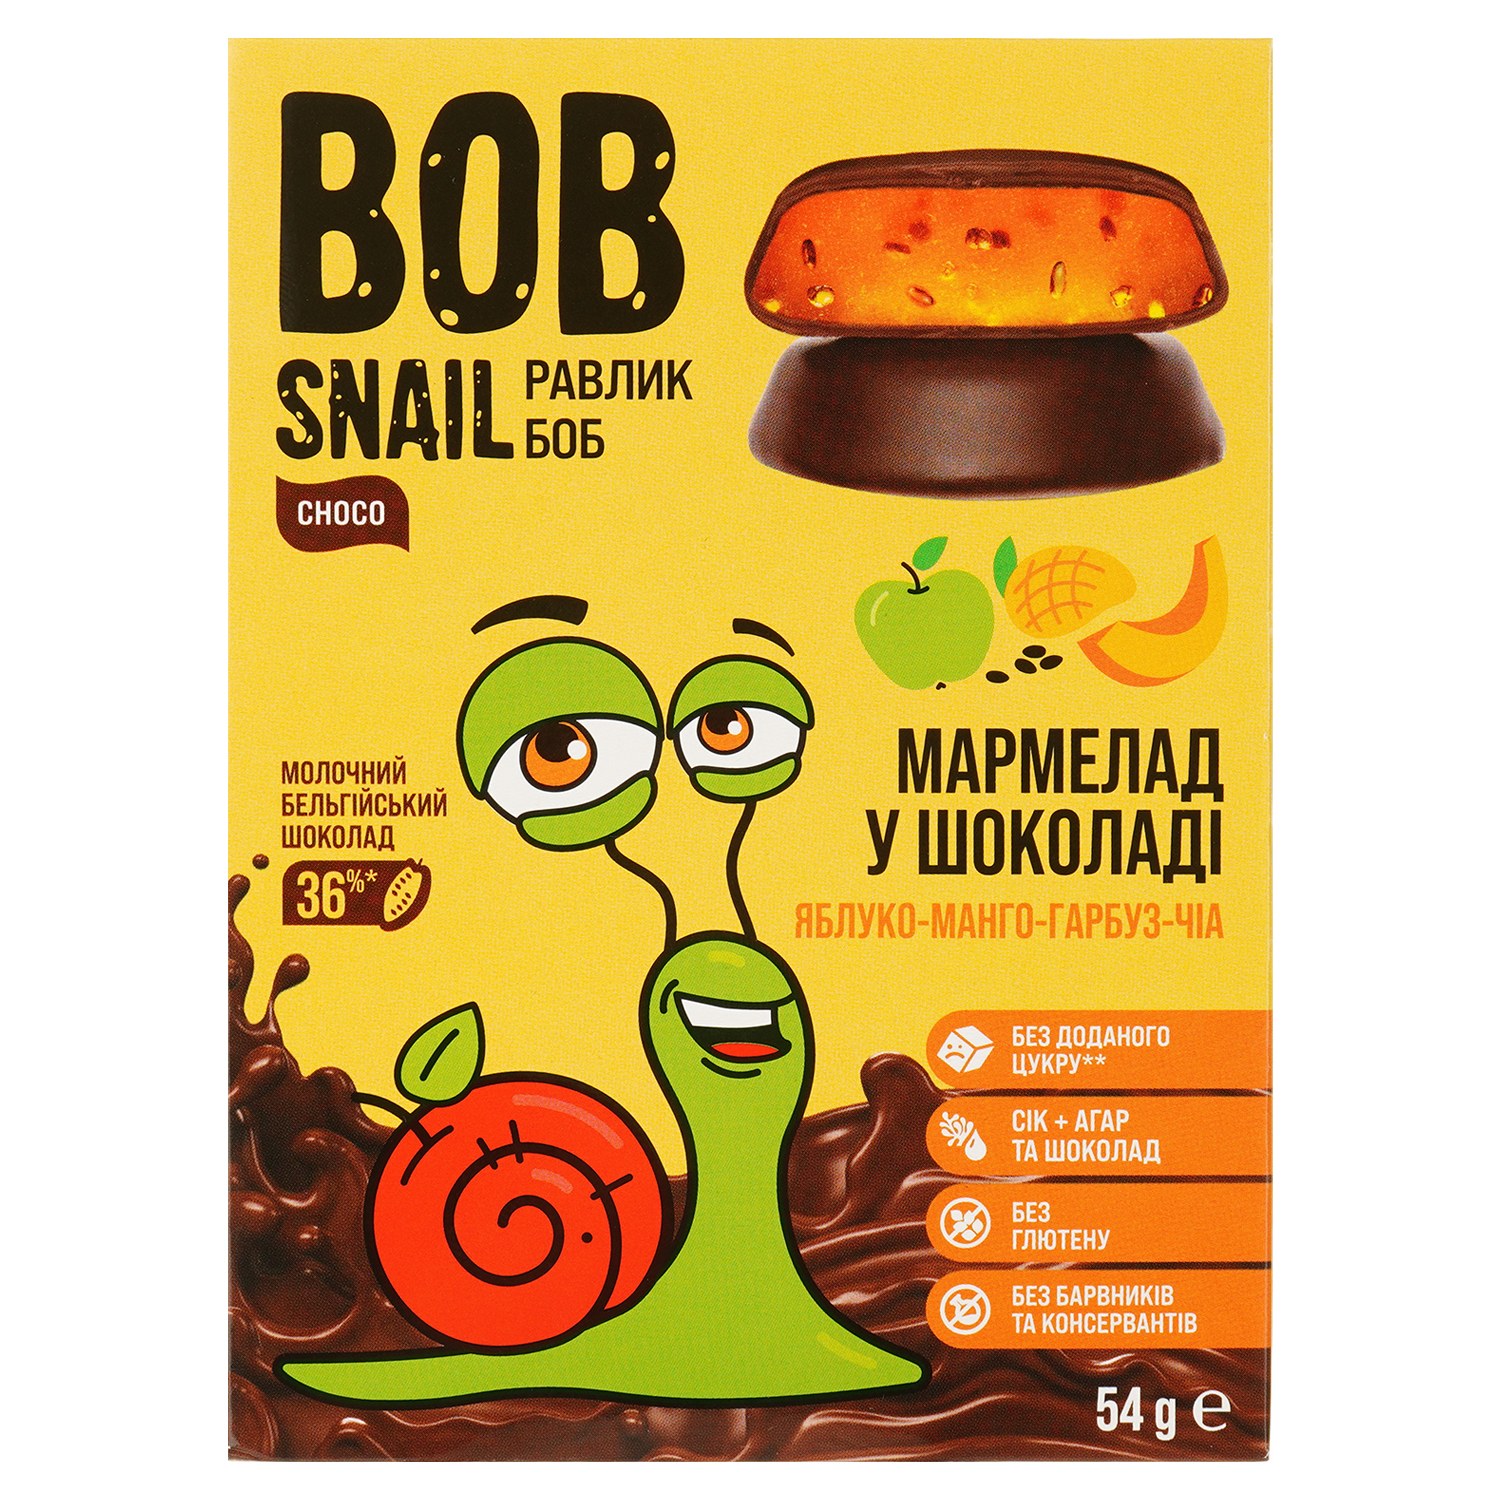 Фруктово-овочевий мармелад Bob Snail Яблуко-Манго-Гарбуз-Чіа в бельгійському молочному шоколаді 54 г - фото 1